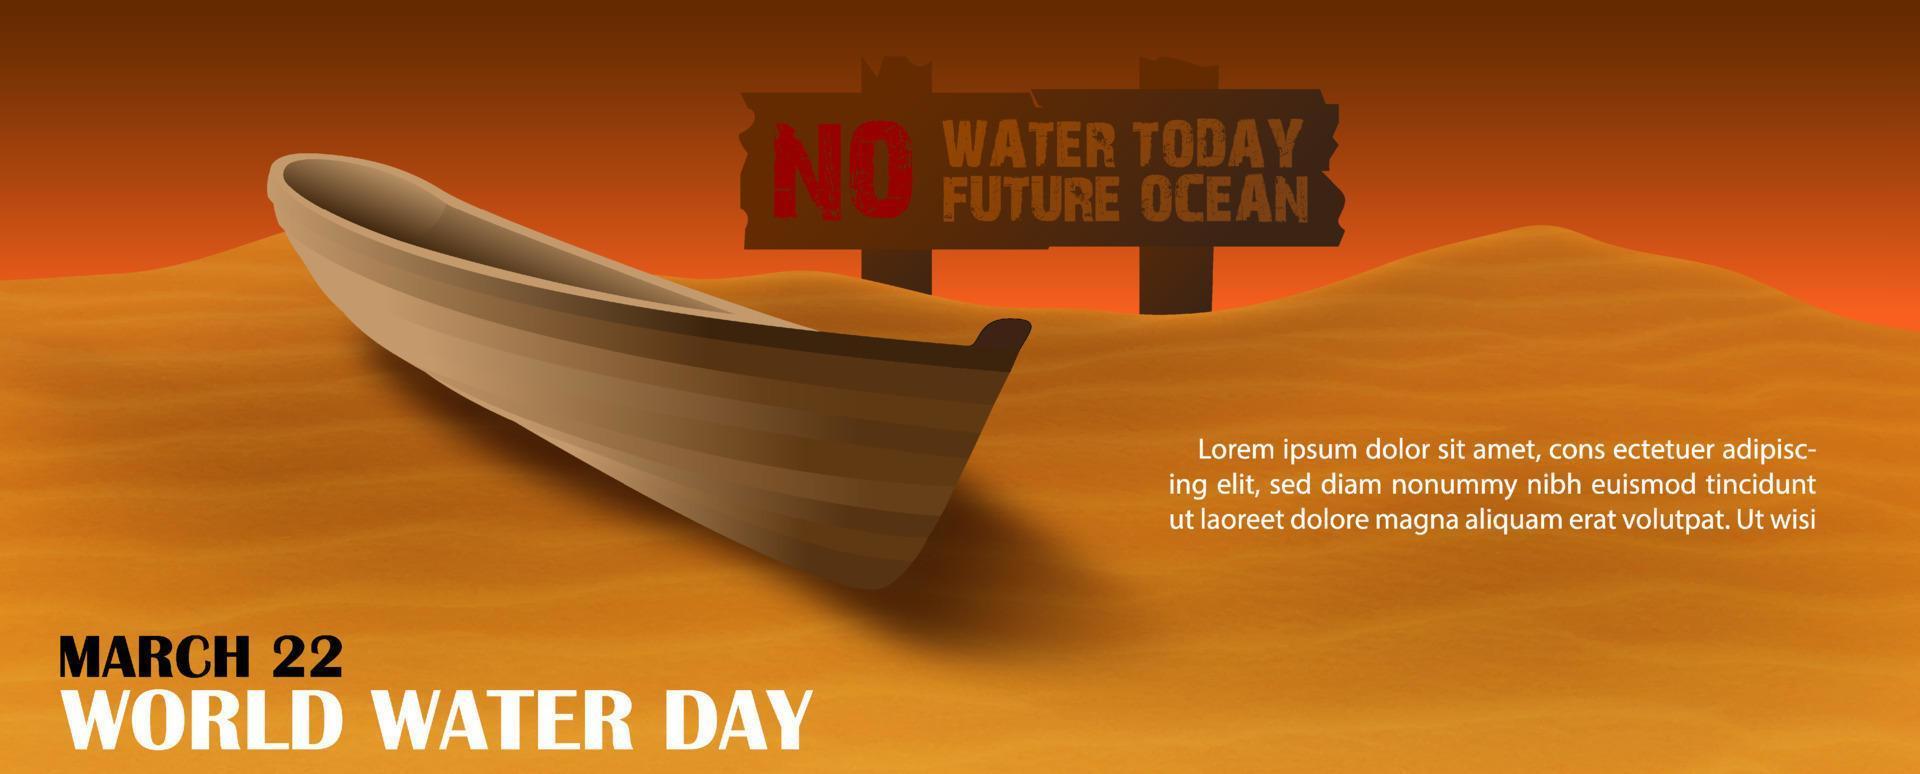 barco de madera en el desierto con eslogan y redacción del día mundial del agua, texto de ejemplo sobre el fondo de la puesta de sol. campaña de afiches del día mundial del agua en diseño de pancartas y vectores. vector